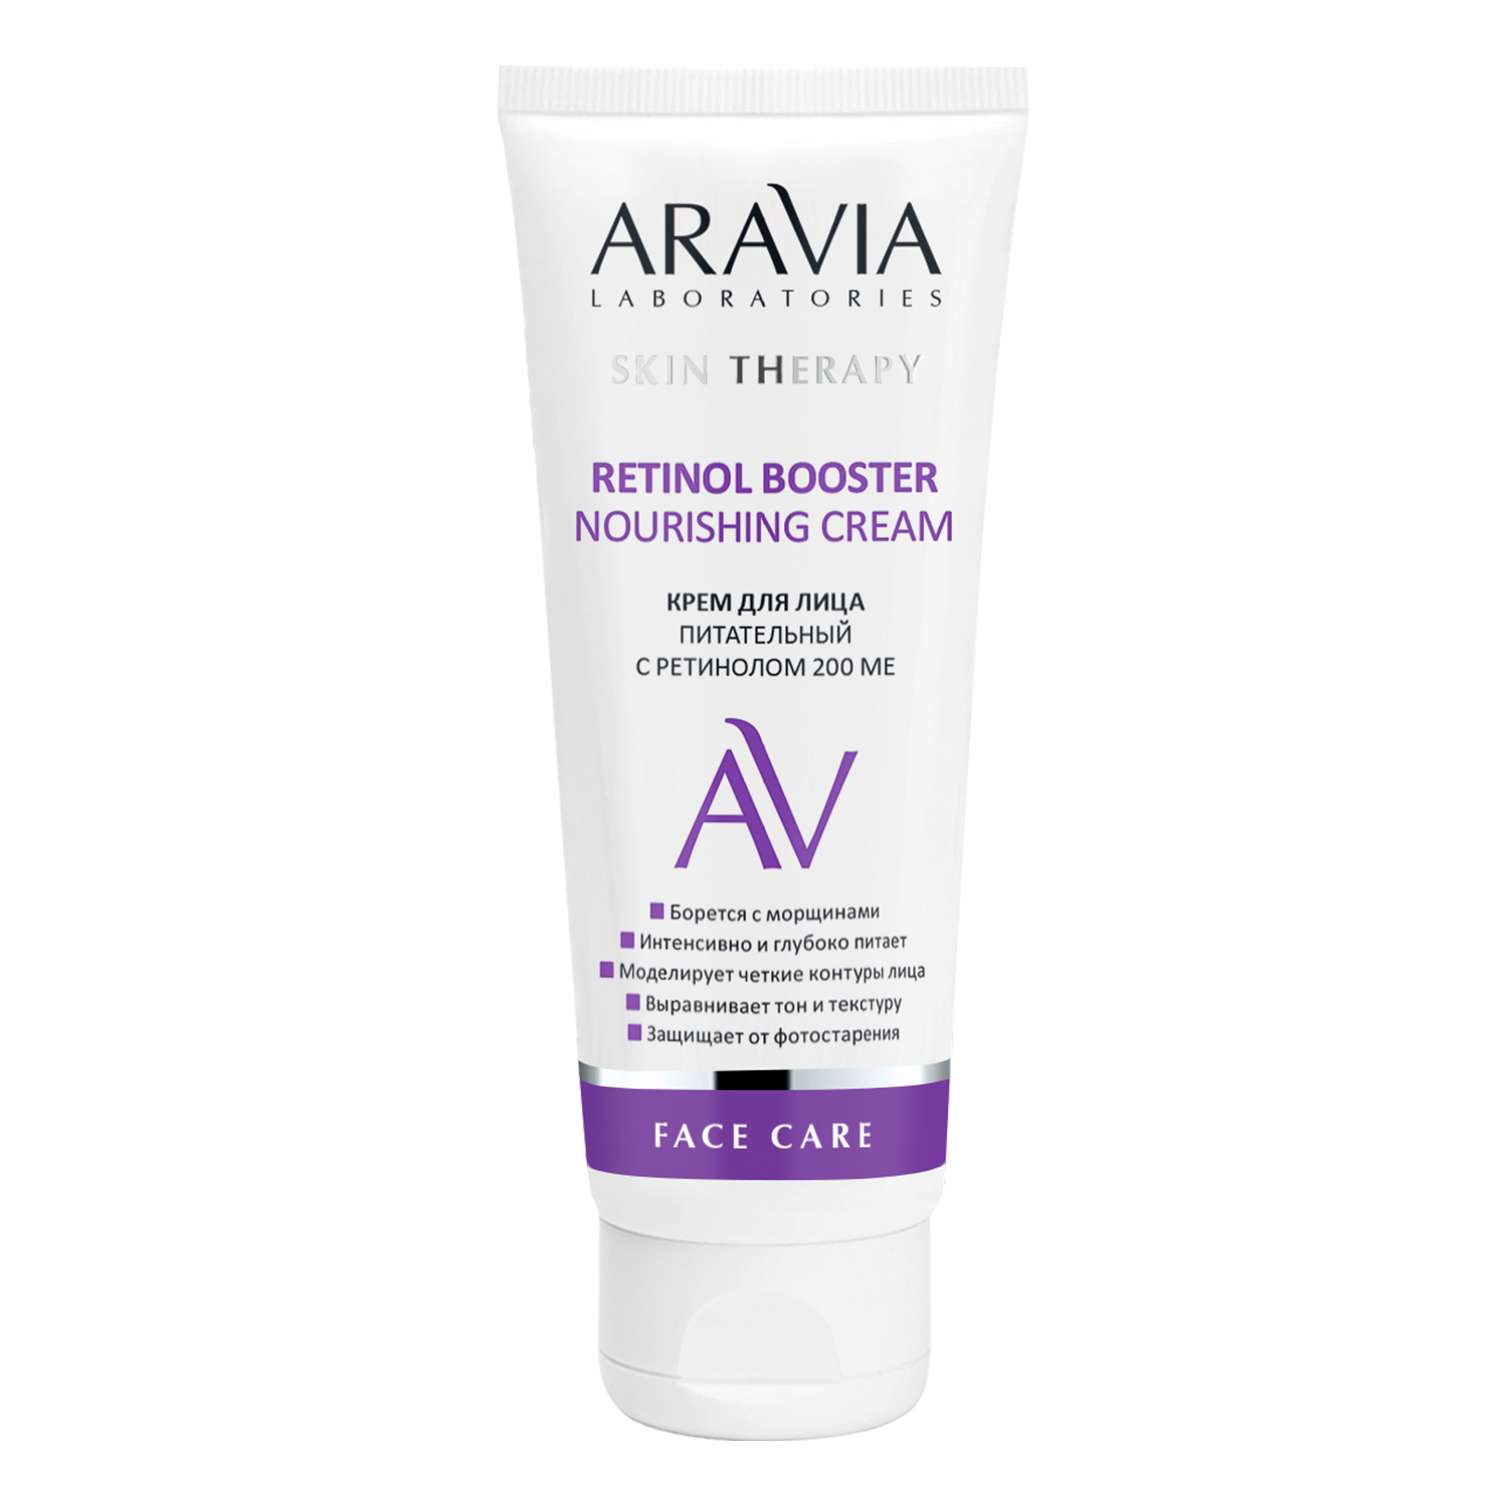 Крем для лица ARAVIA Laboratories питательный с ретинолом 200 МЕ Retinol Booster Nourishing Cream 50 мл - фото 2